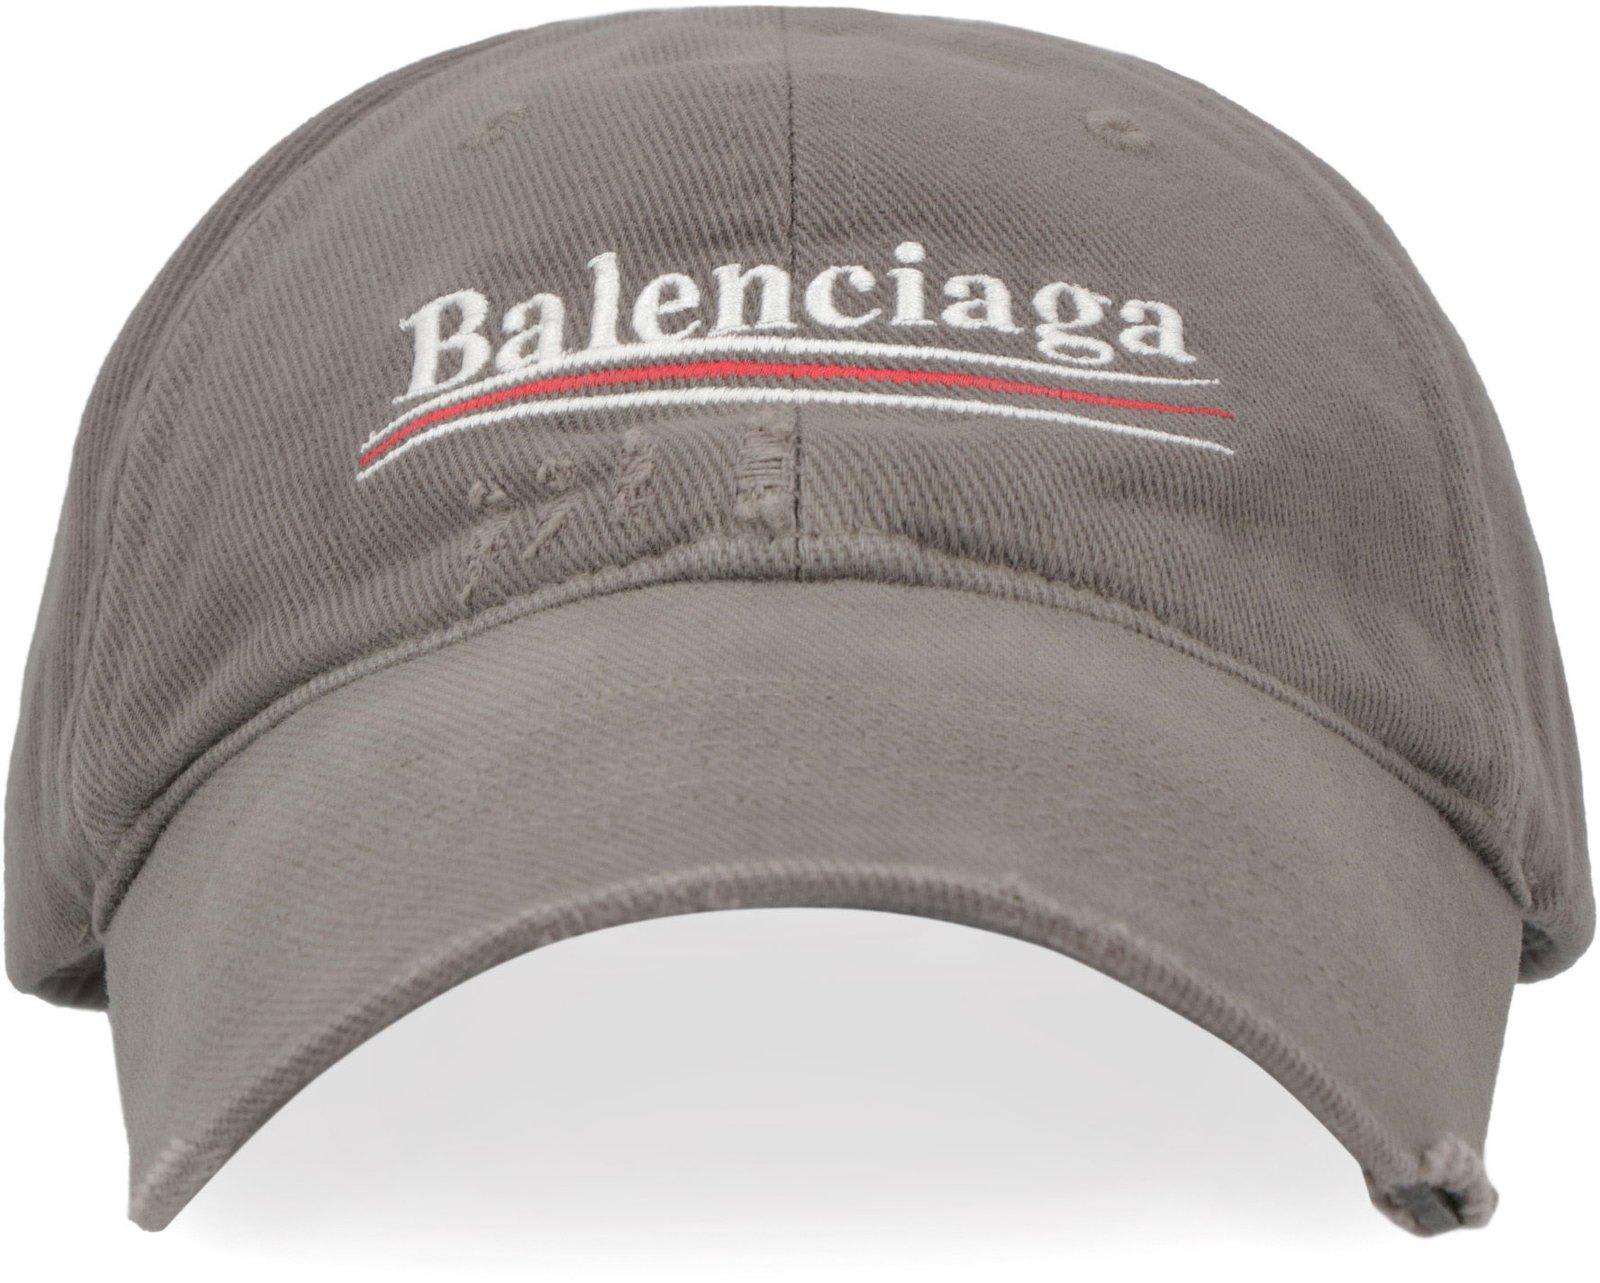 Balenciaga Logo Embroidered Distressed Baseball Cap